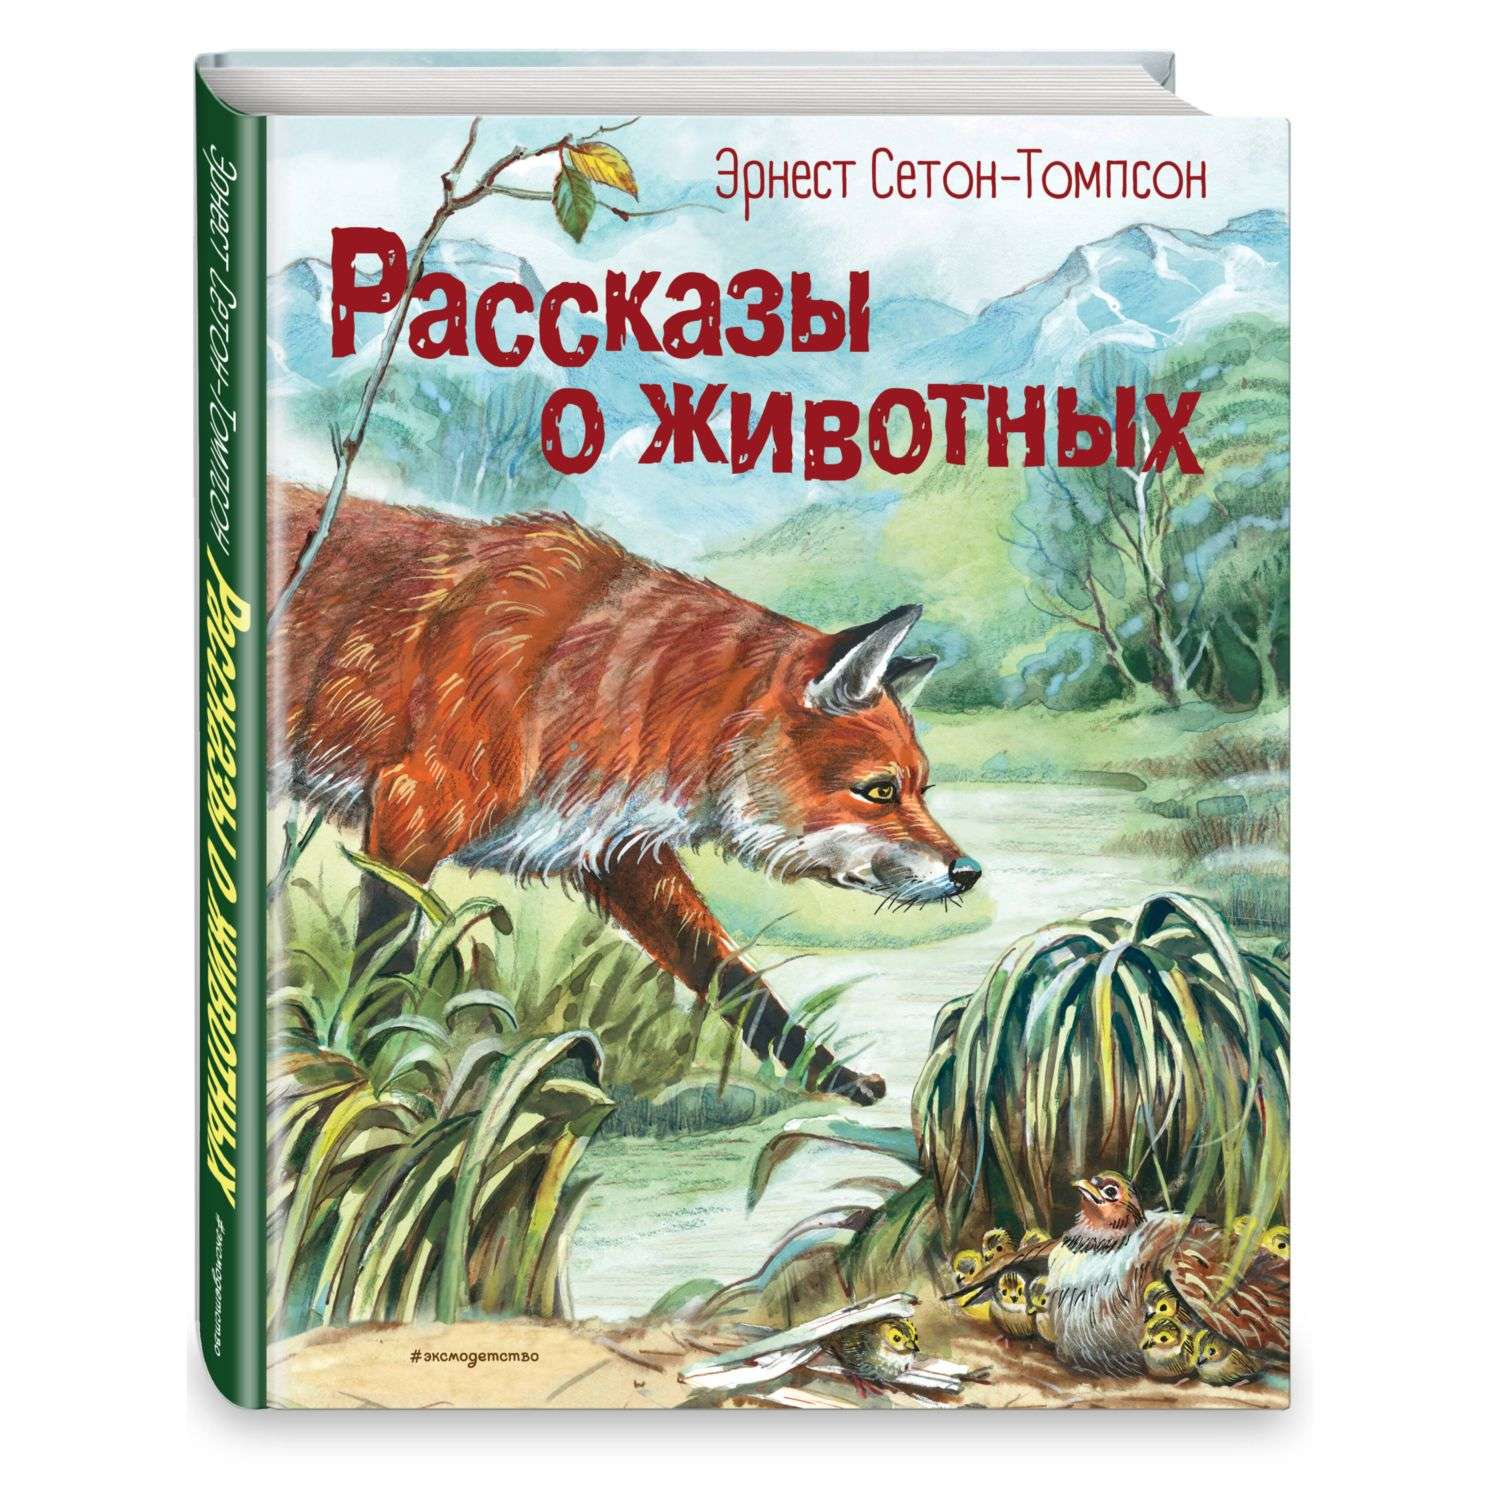 Книга Рассказы о животных иллюстрации Канивца - фото 1